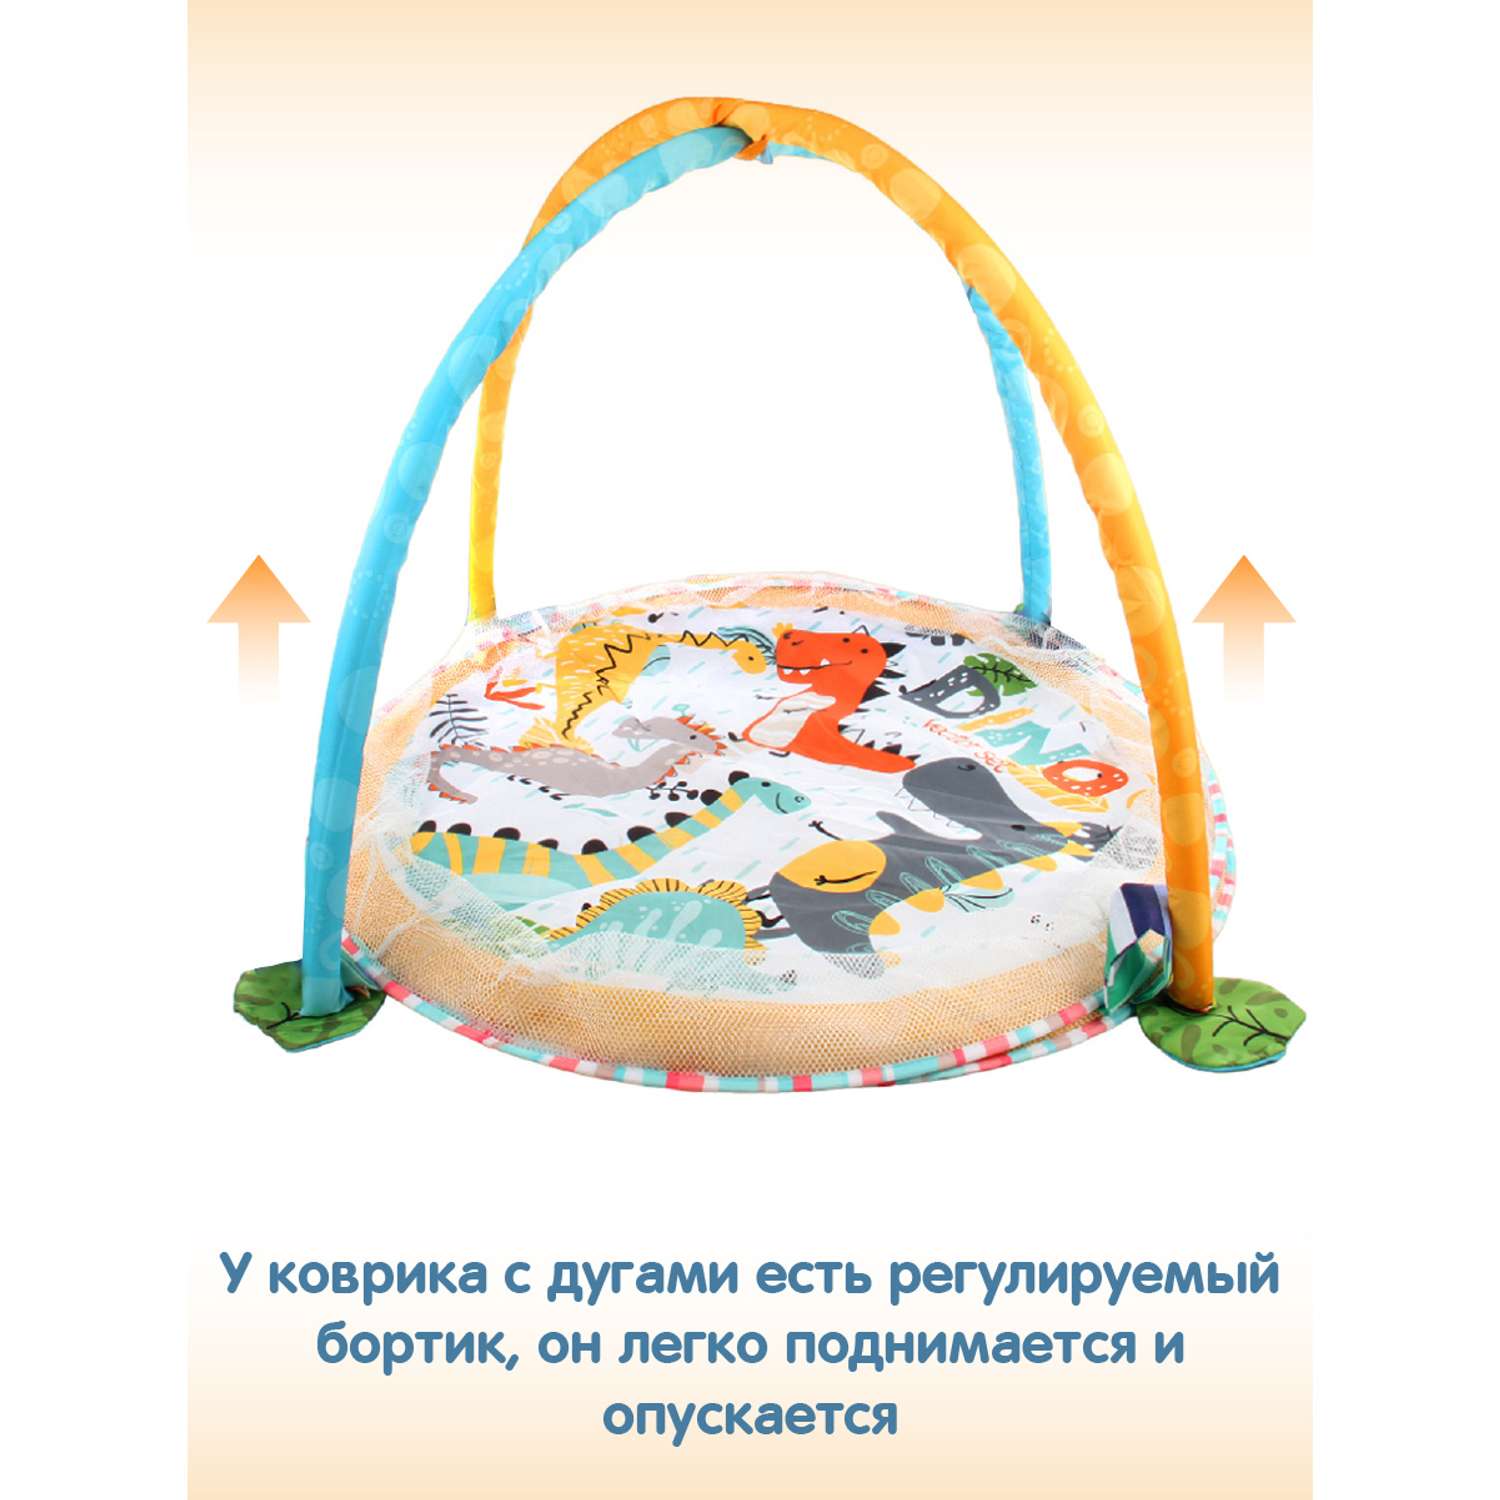 Развивающий коврик Ути Пути игровой манеж с шариками регулируемые бортики - фото 3